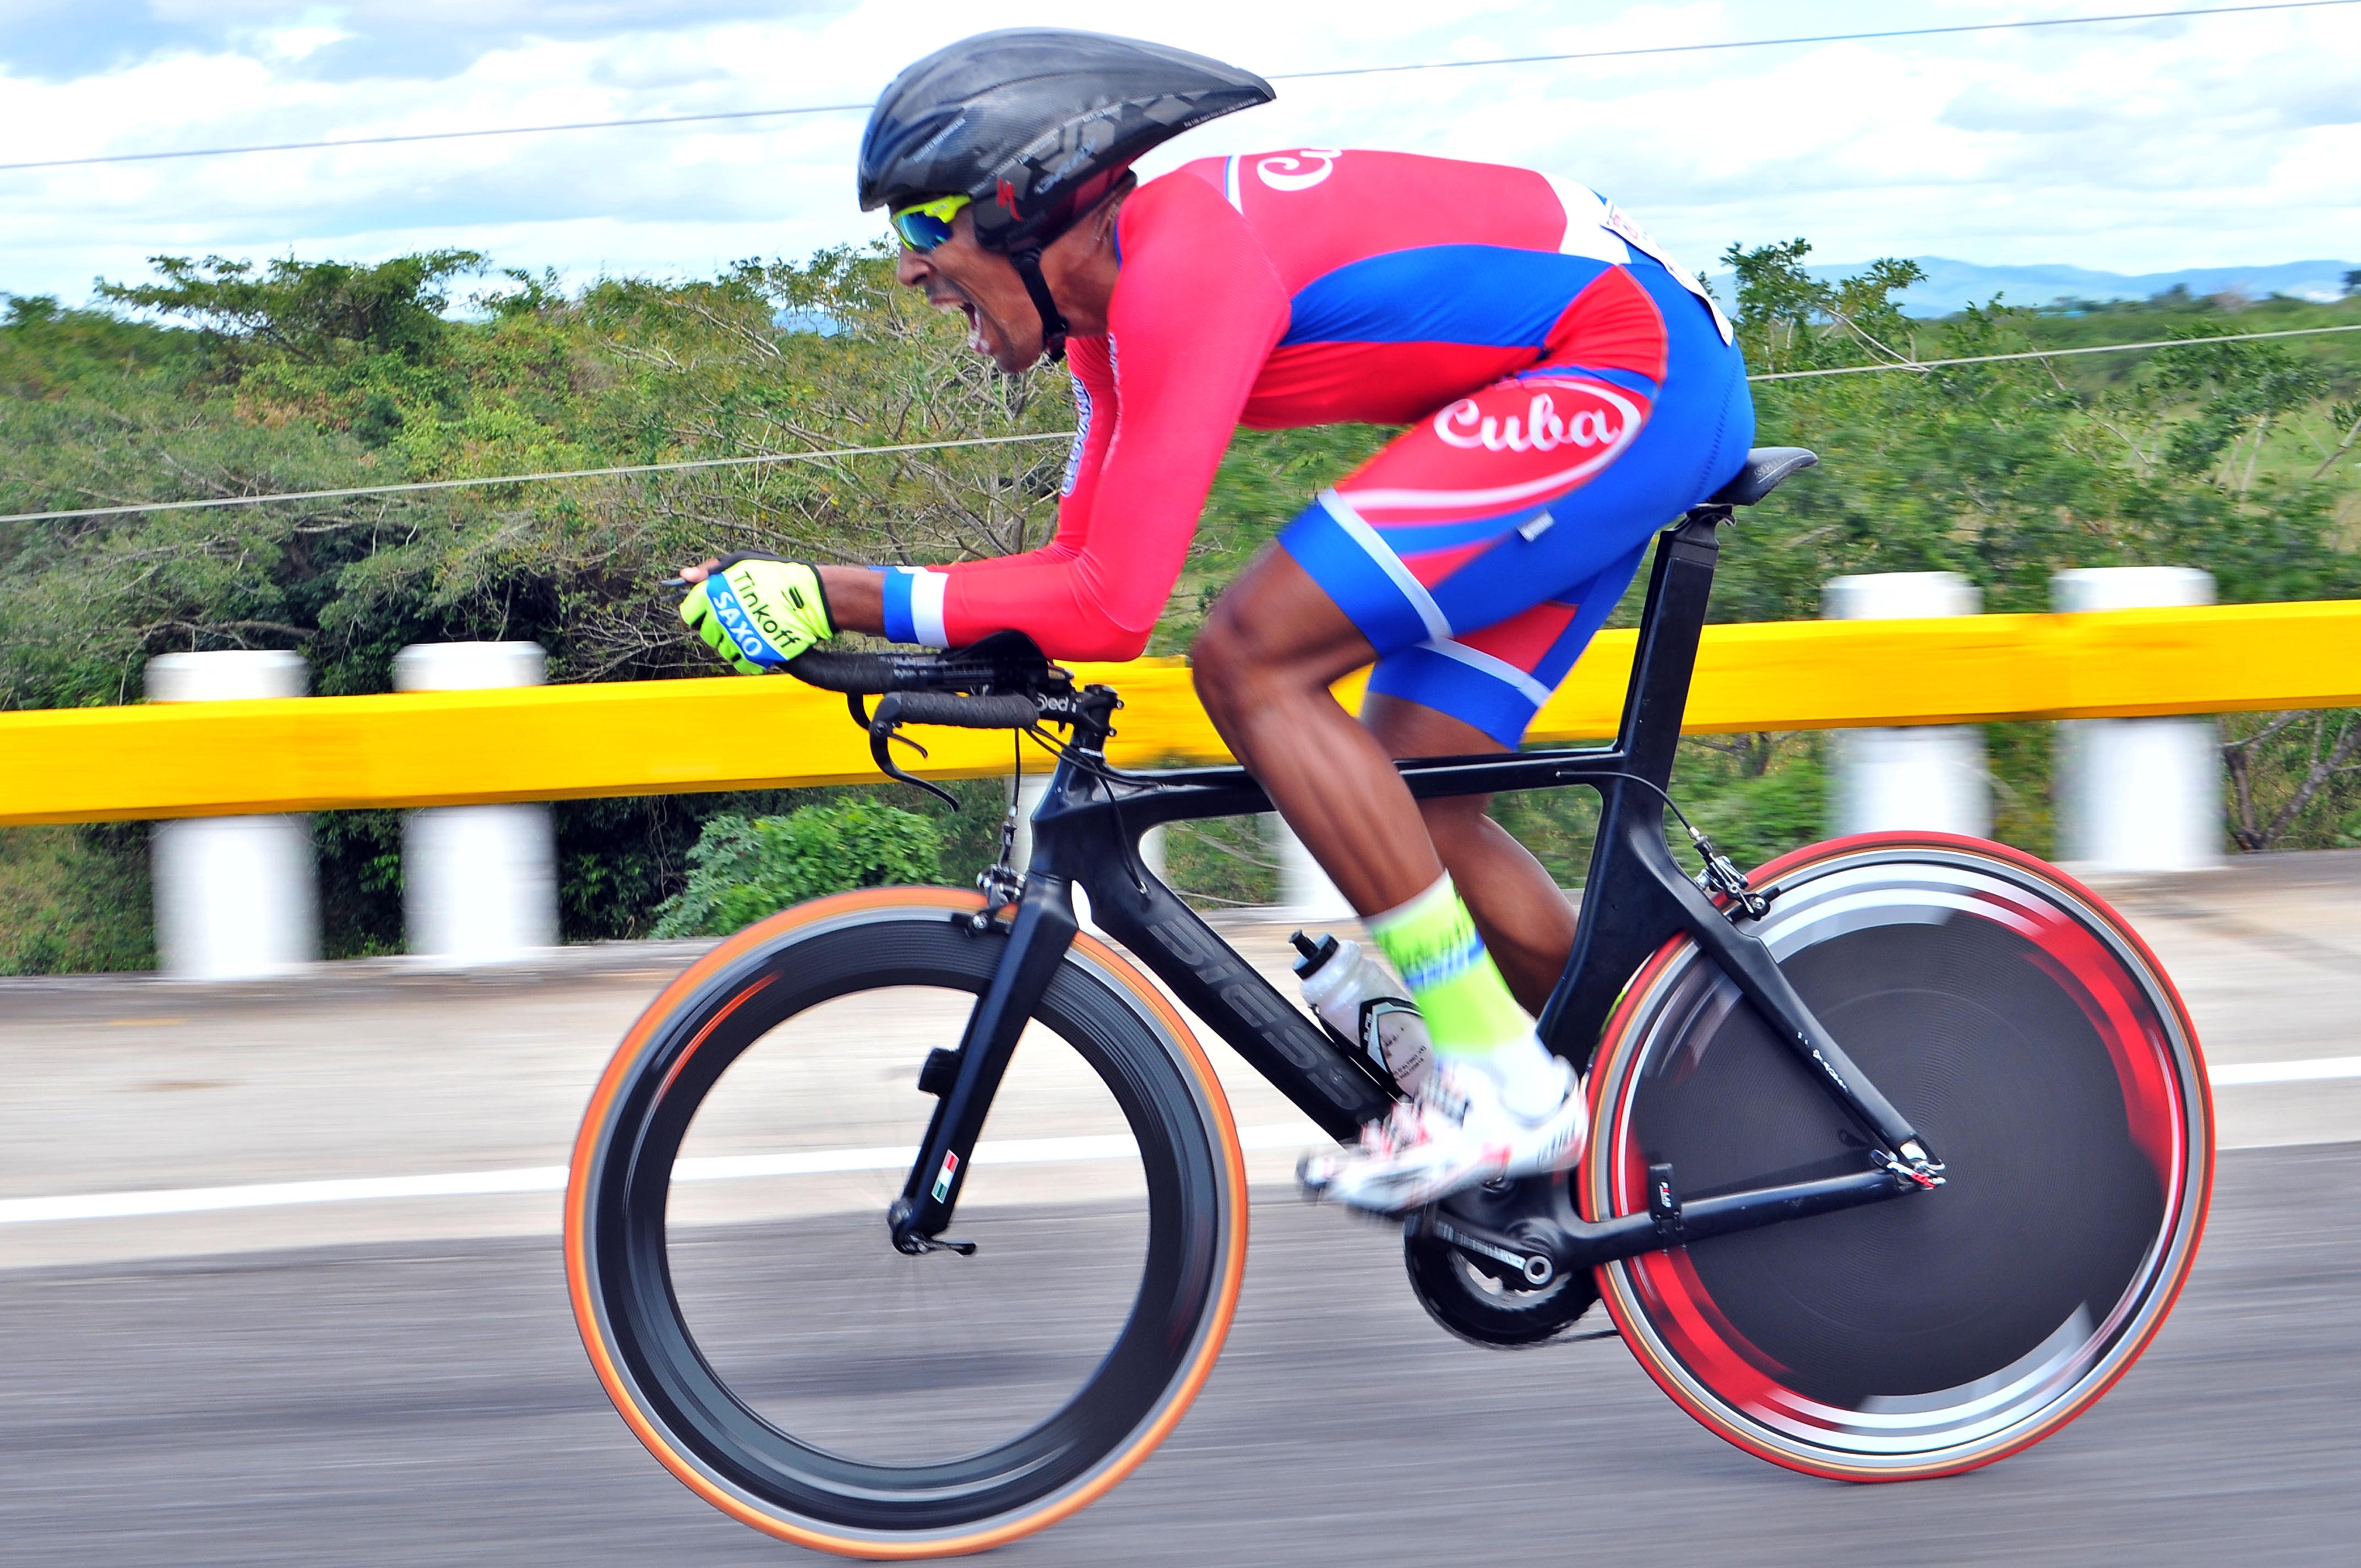 Pedro Portuondo, muy bien en el campeonato de ruta del Caribe con un segundo lugar en la contrarreloj. Foto: Ricardo López Hevia.